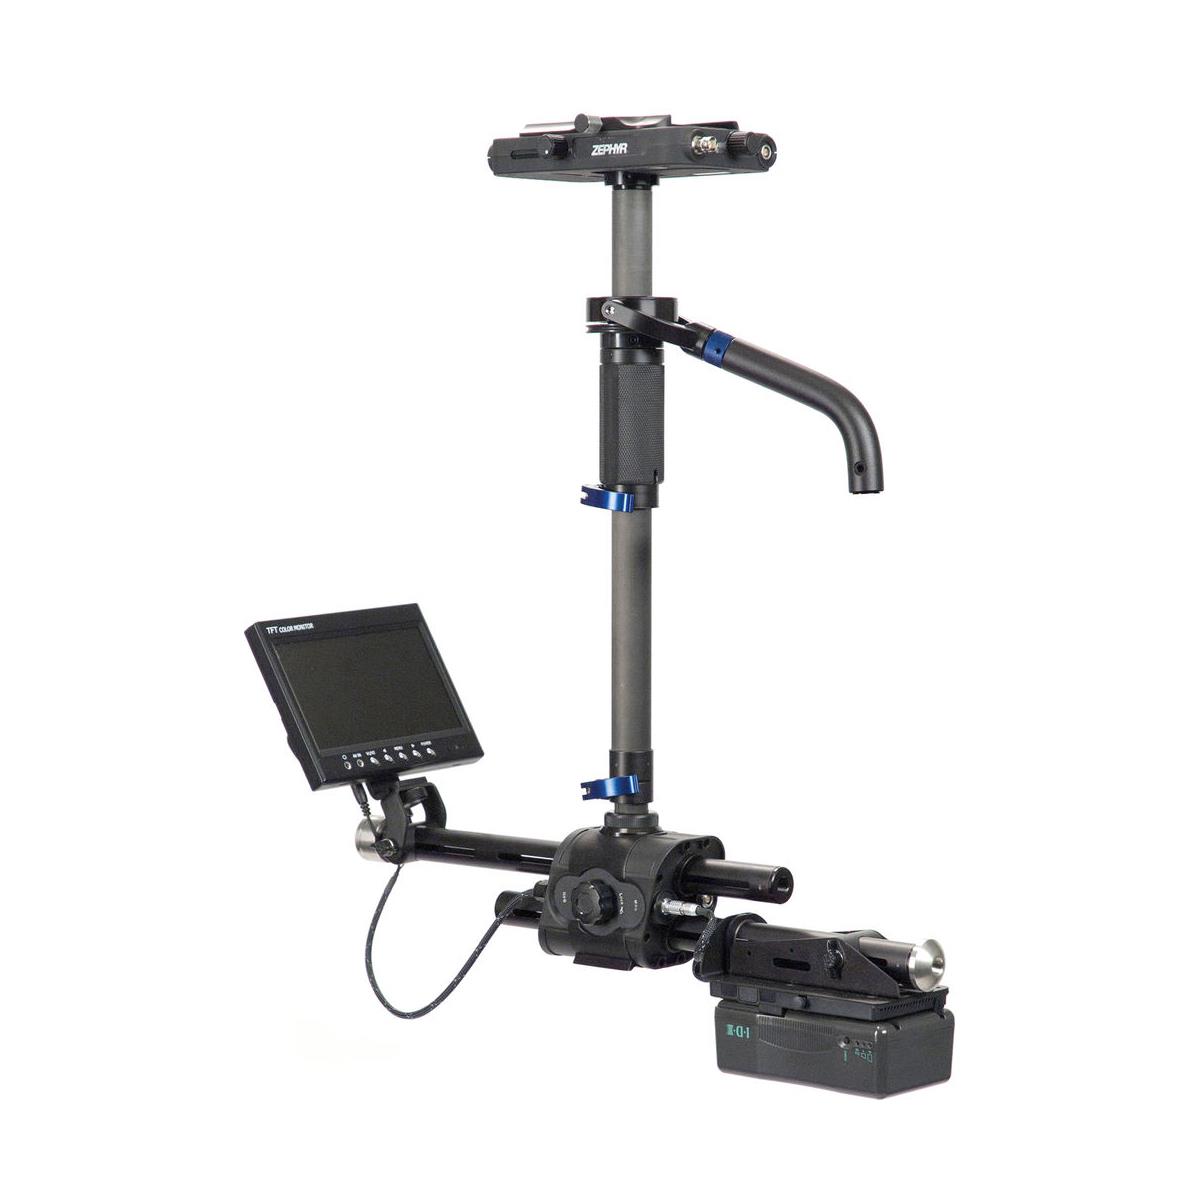 

SteadiCam Zephyr Camera Stabilizer System, Includes Compact Vest, V-Mount Plate